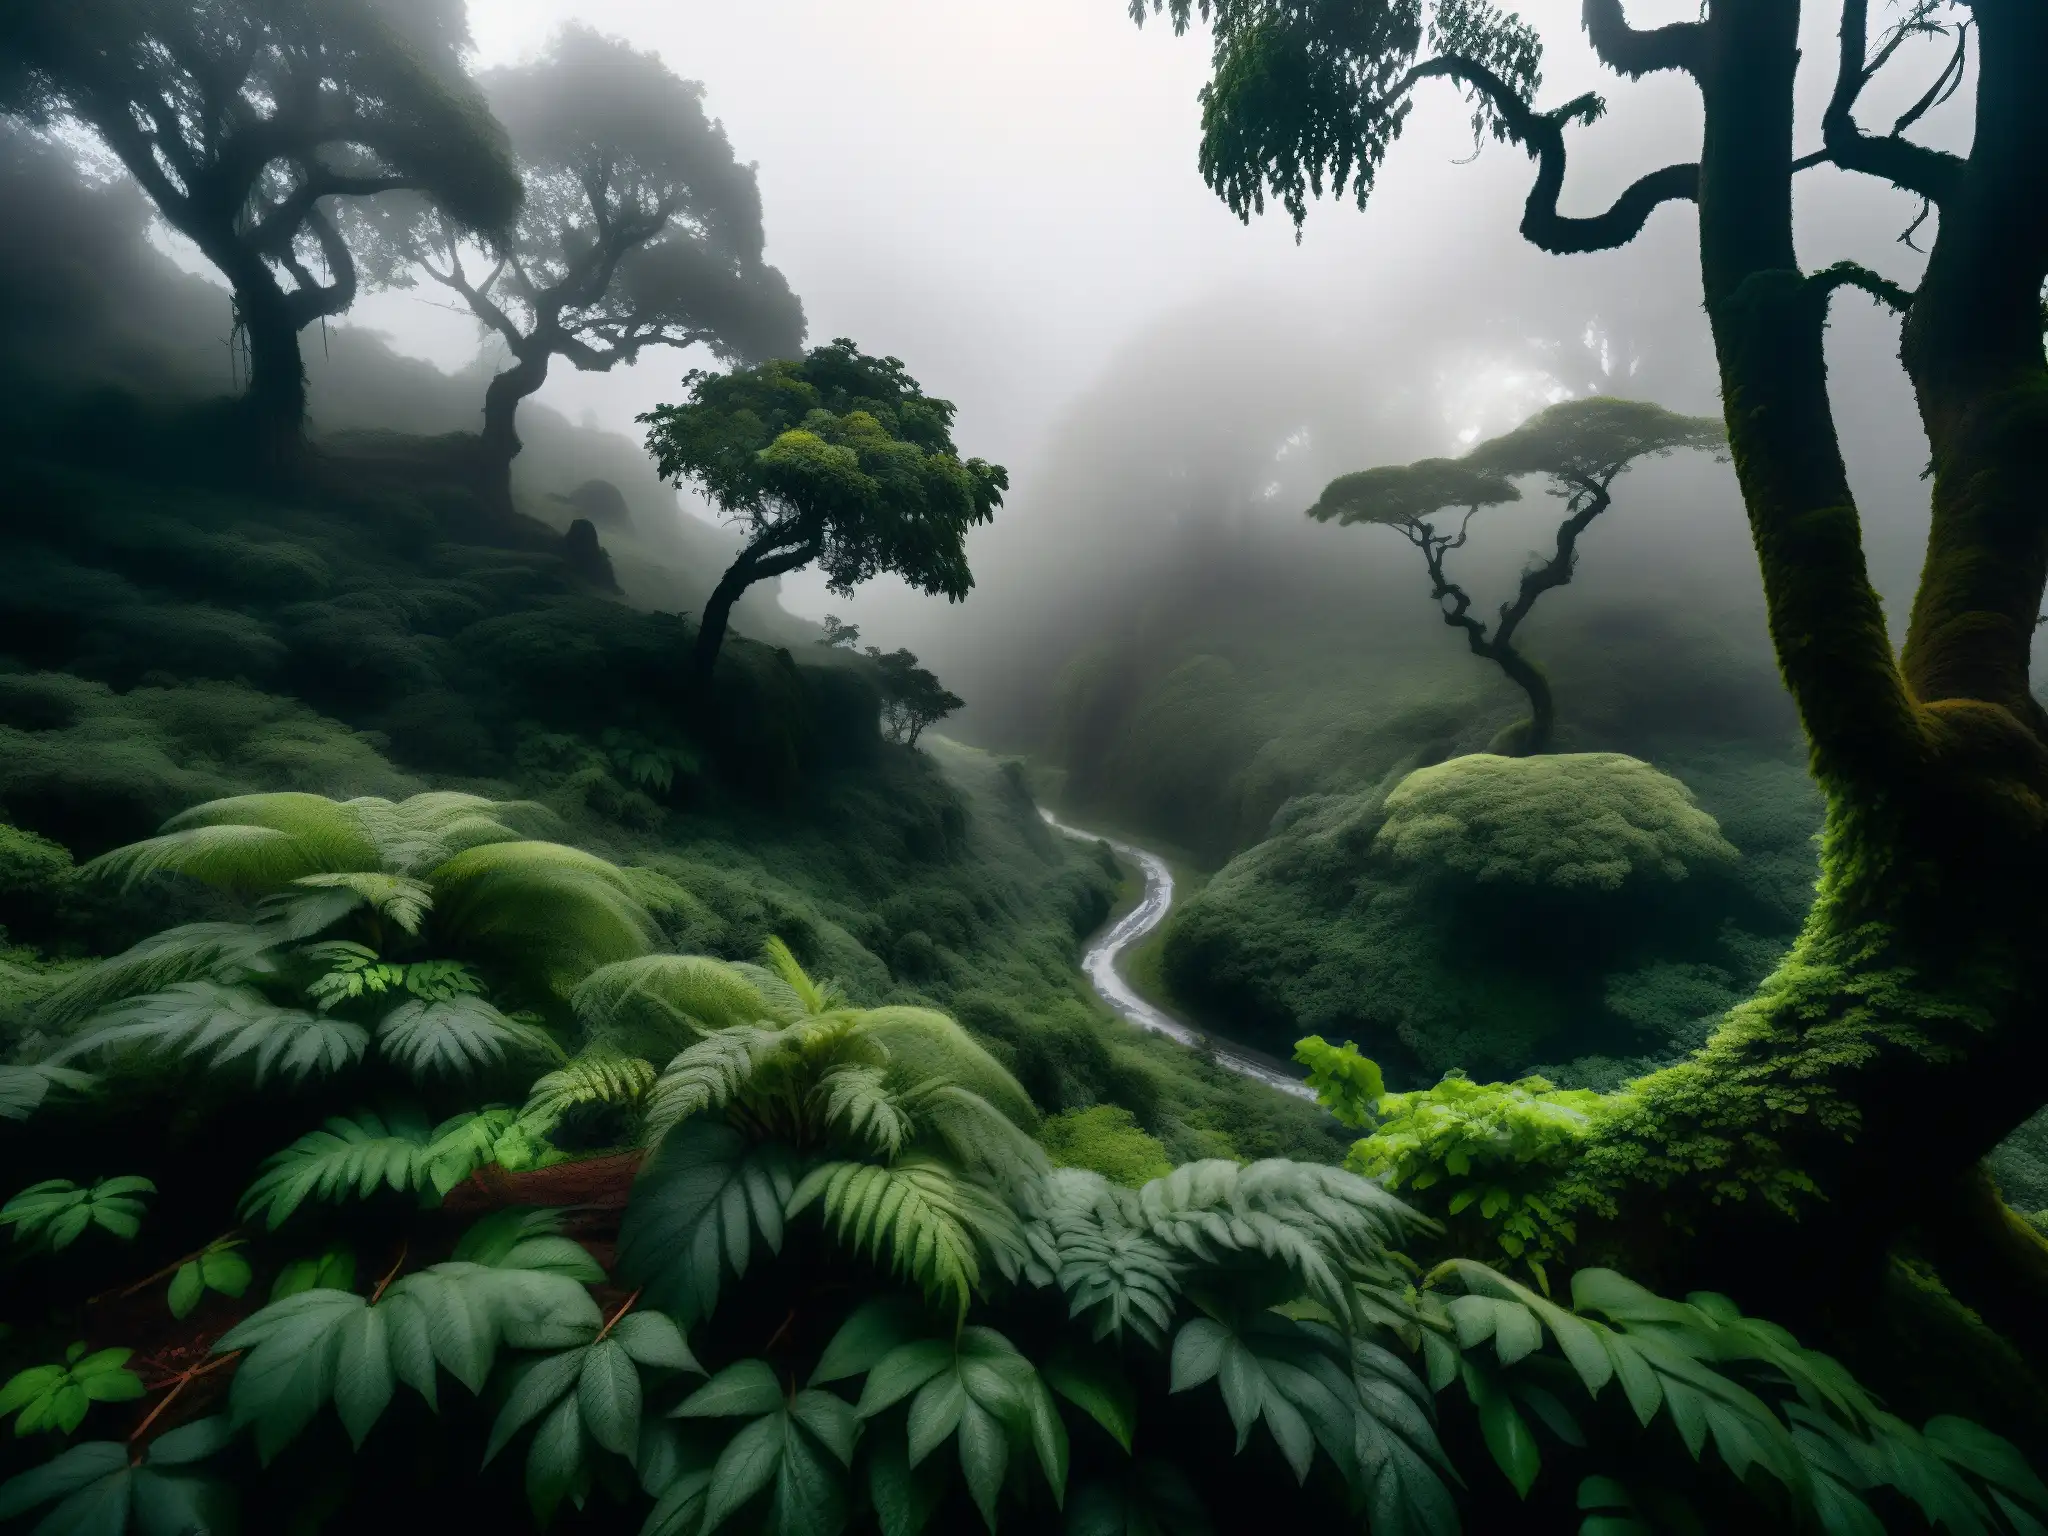 Imagen del bosque misterioso en Chile con avistamientos del culebrón, serpiente legendaria entre la vegetación densa y la niebla